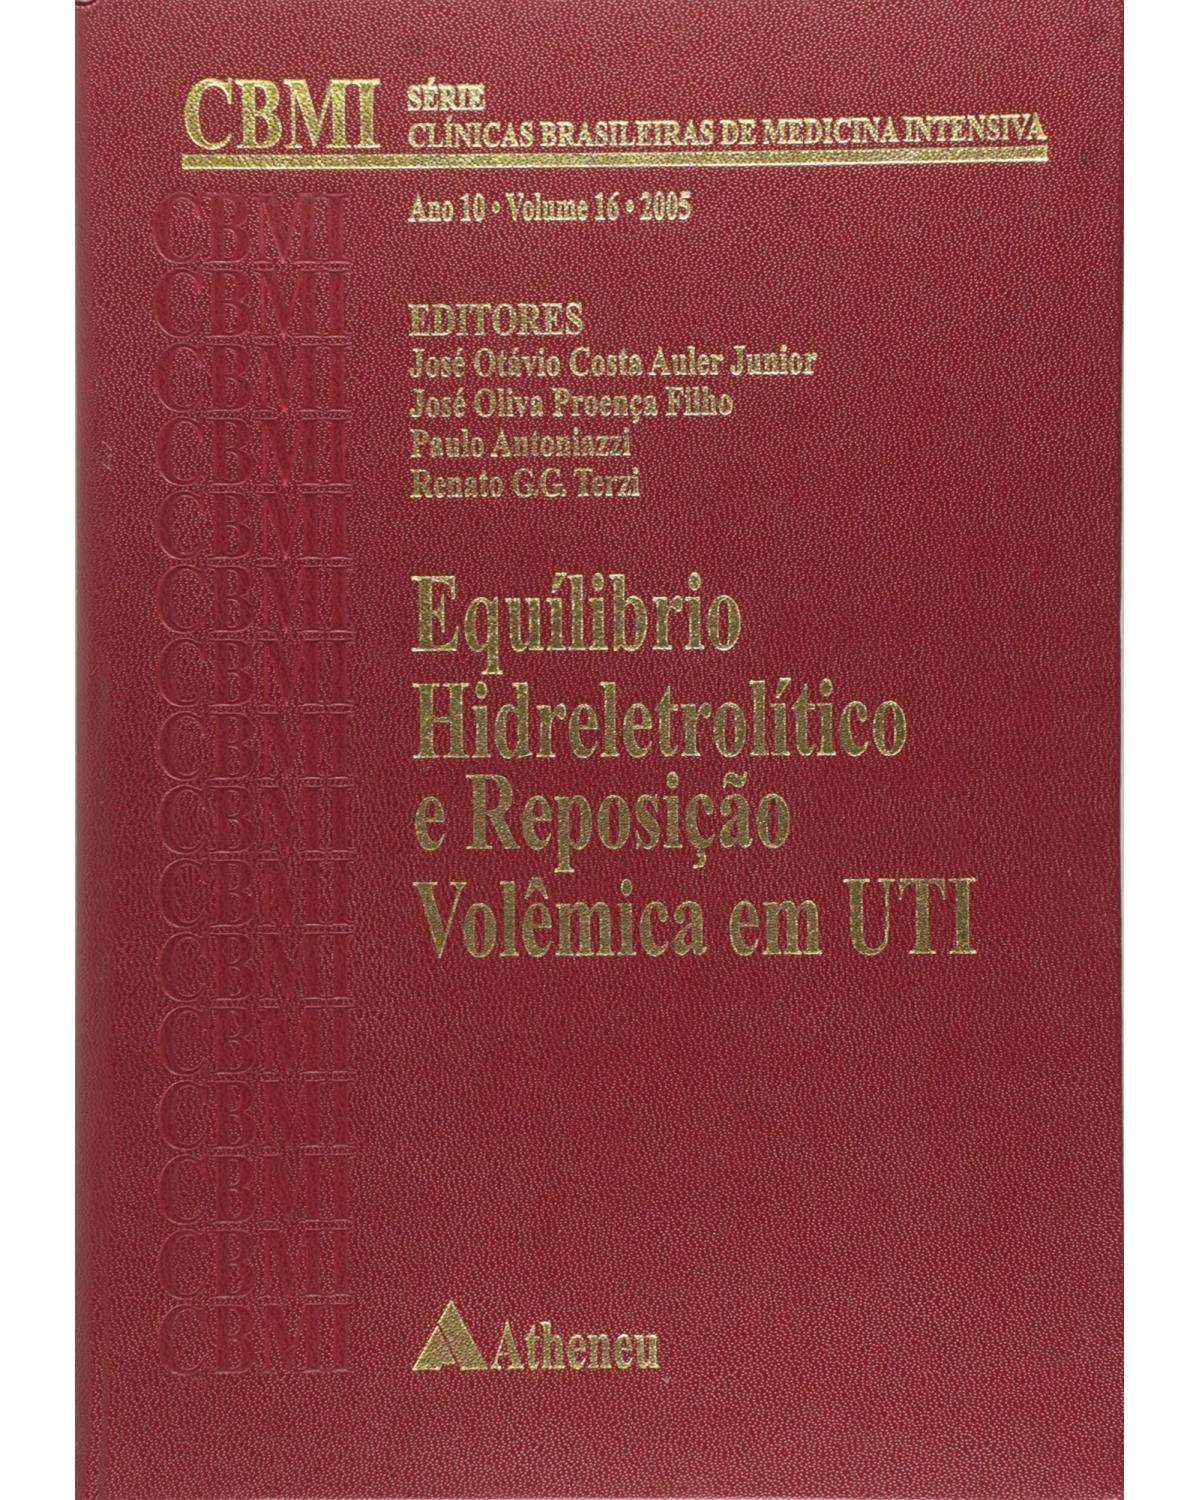 Equilíbrio hidreletrolítico e reposição volêmica em UTI - 1ª Edição | 2011